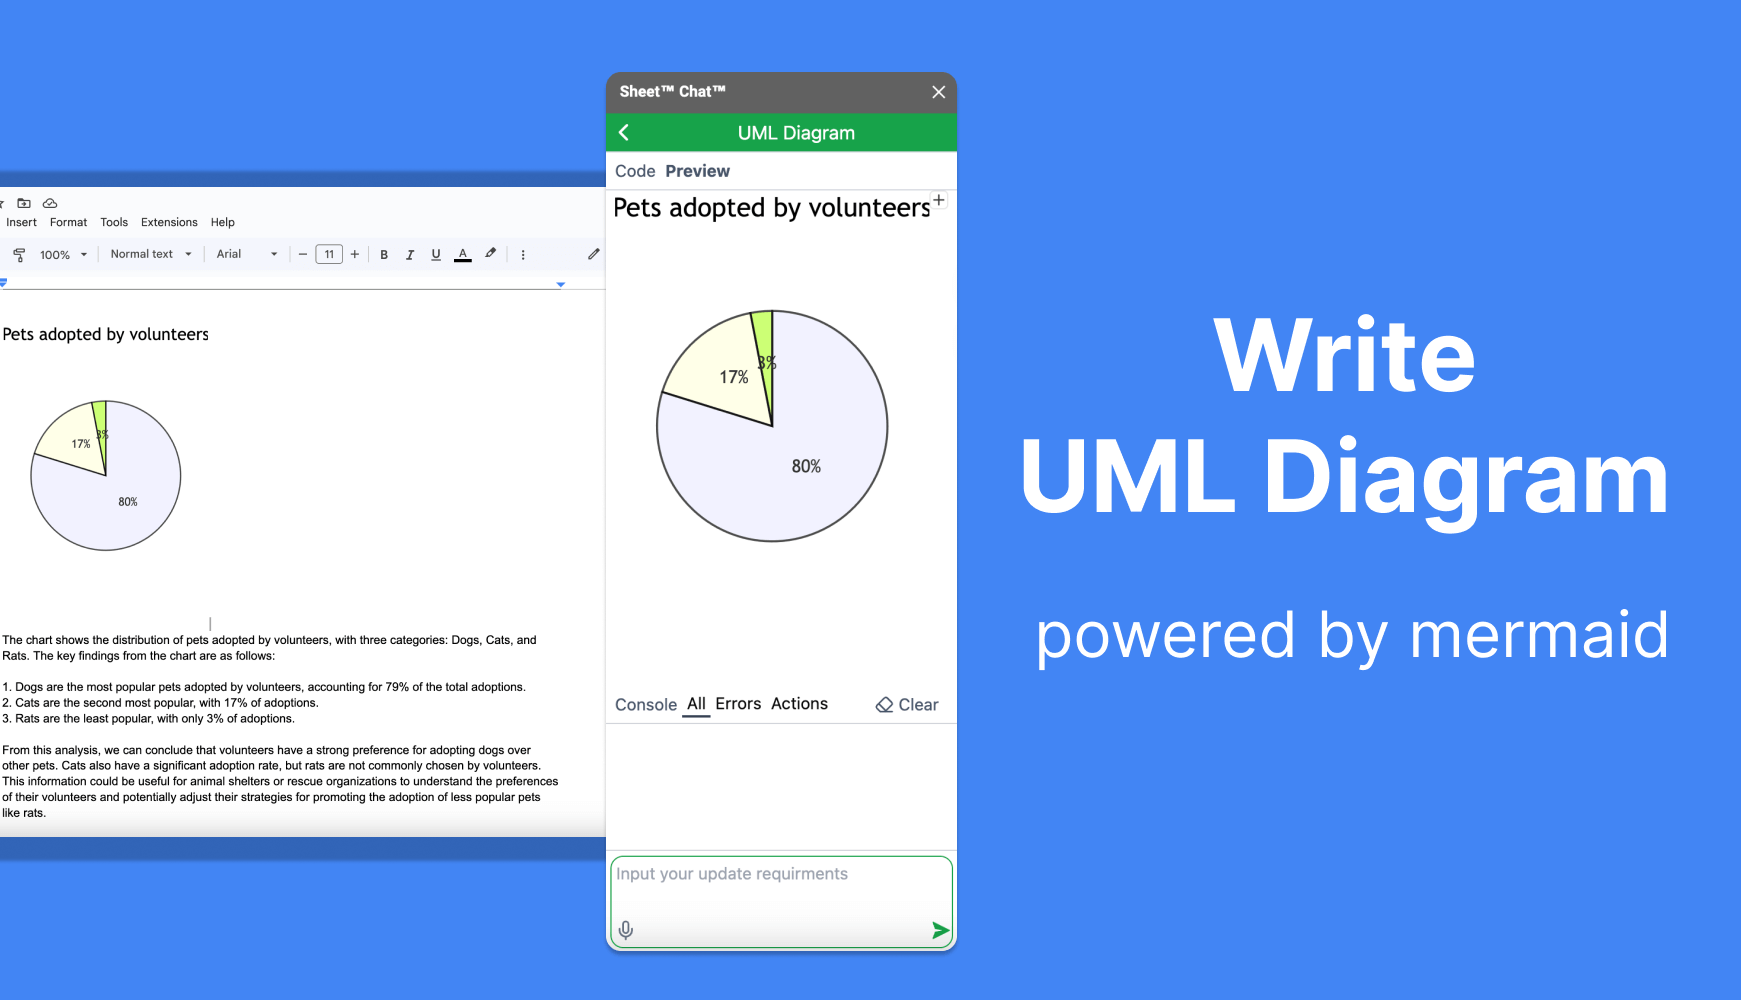 Write UML Diagram